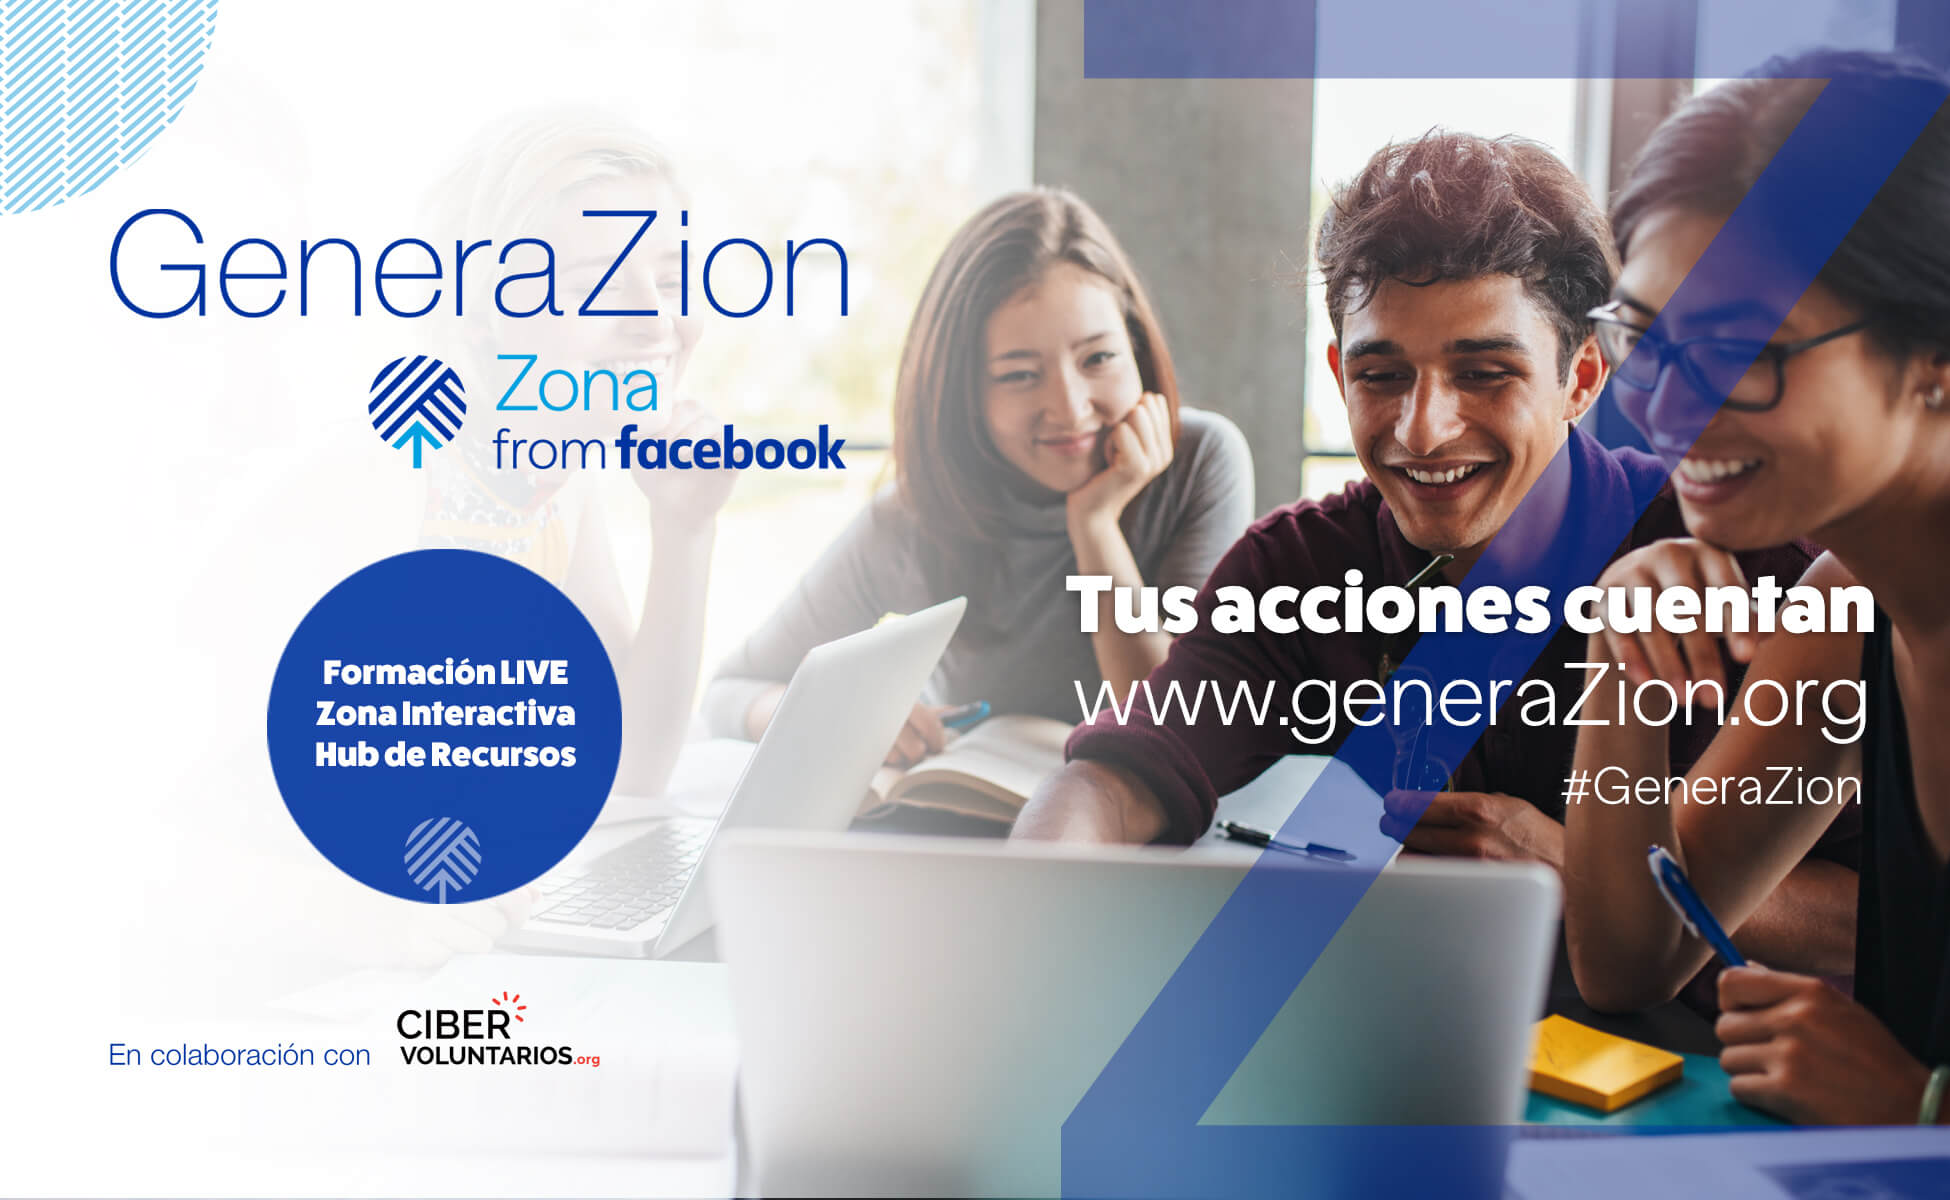 Segunda edición del proyecto educativo GeneraZión, con nuevos recursos para jóvenes y profesores en el uso seguro de internet